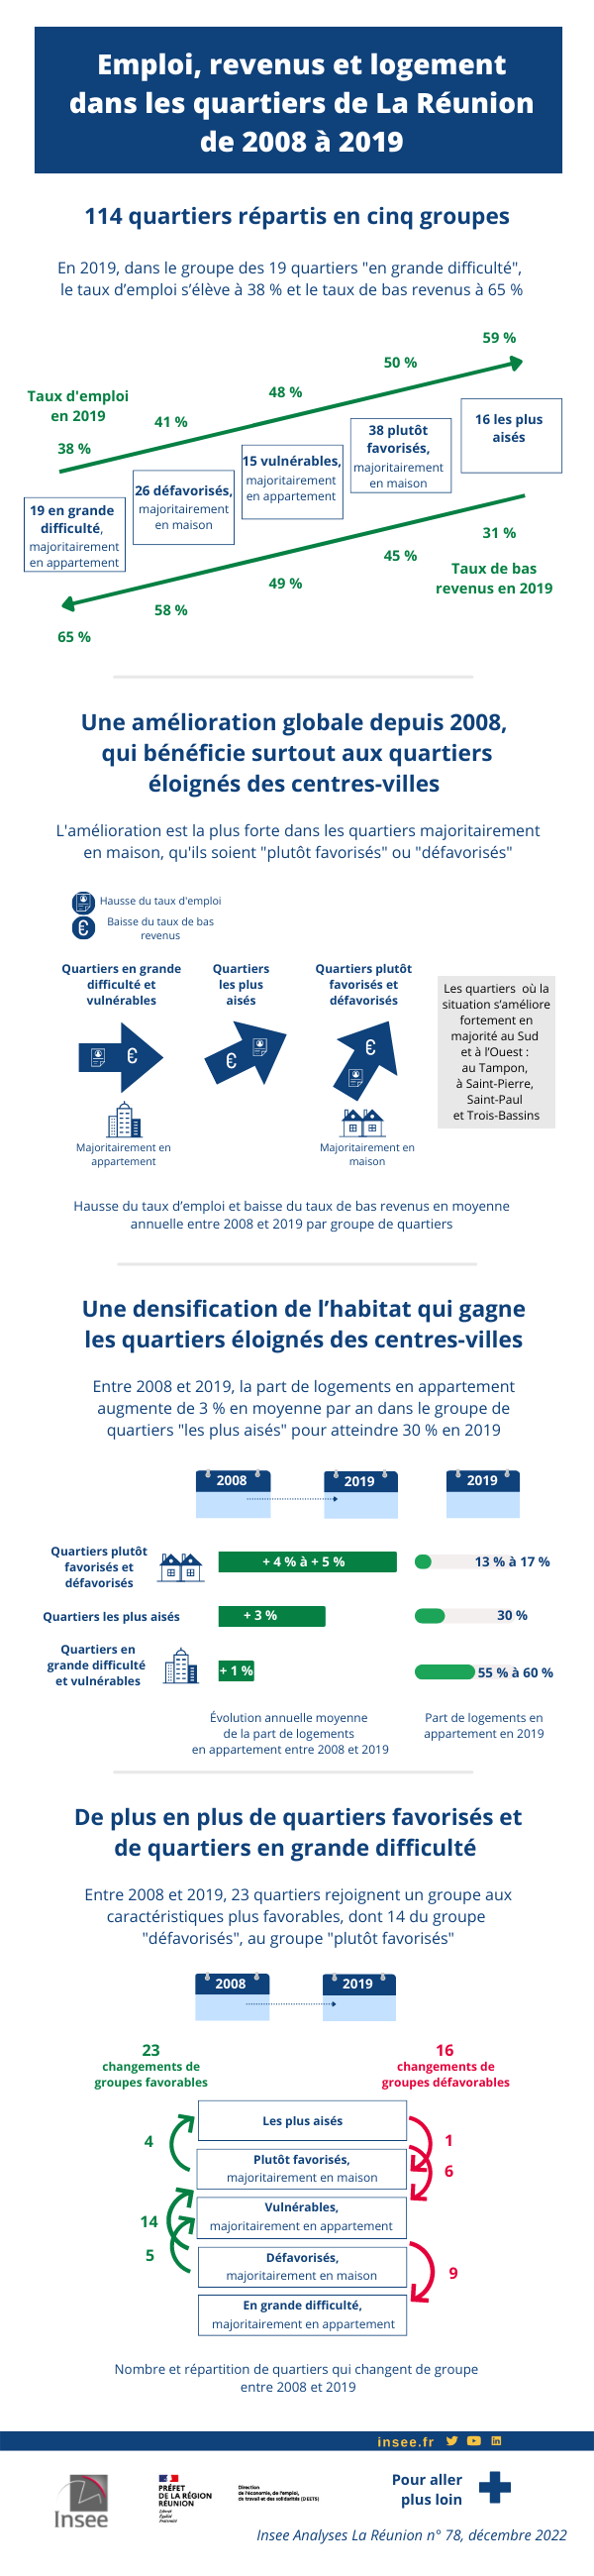 Infographie - Emploi, revenus et logements dans les quartiers de La Réunion de 2008 à 2019